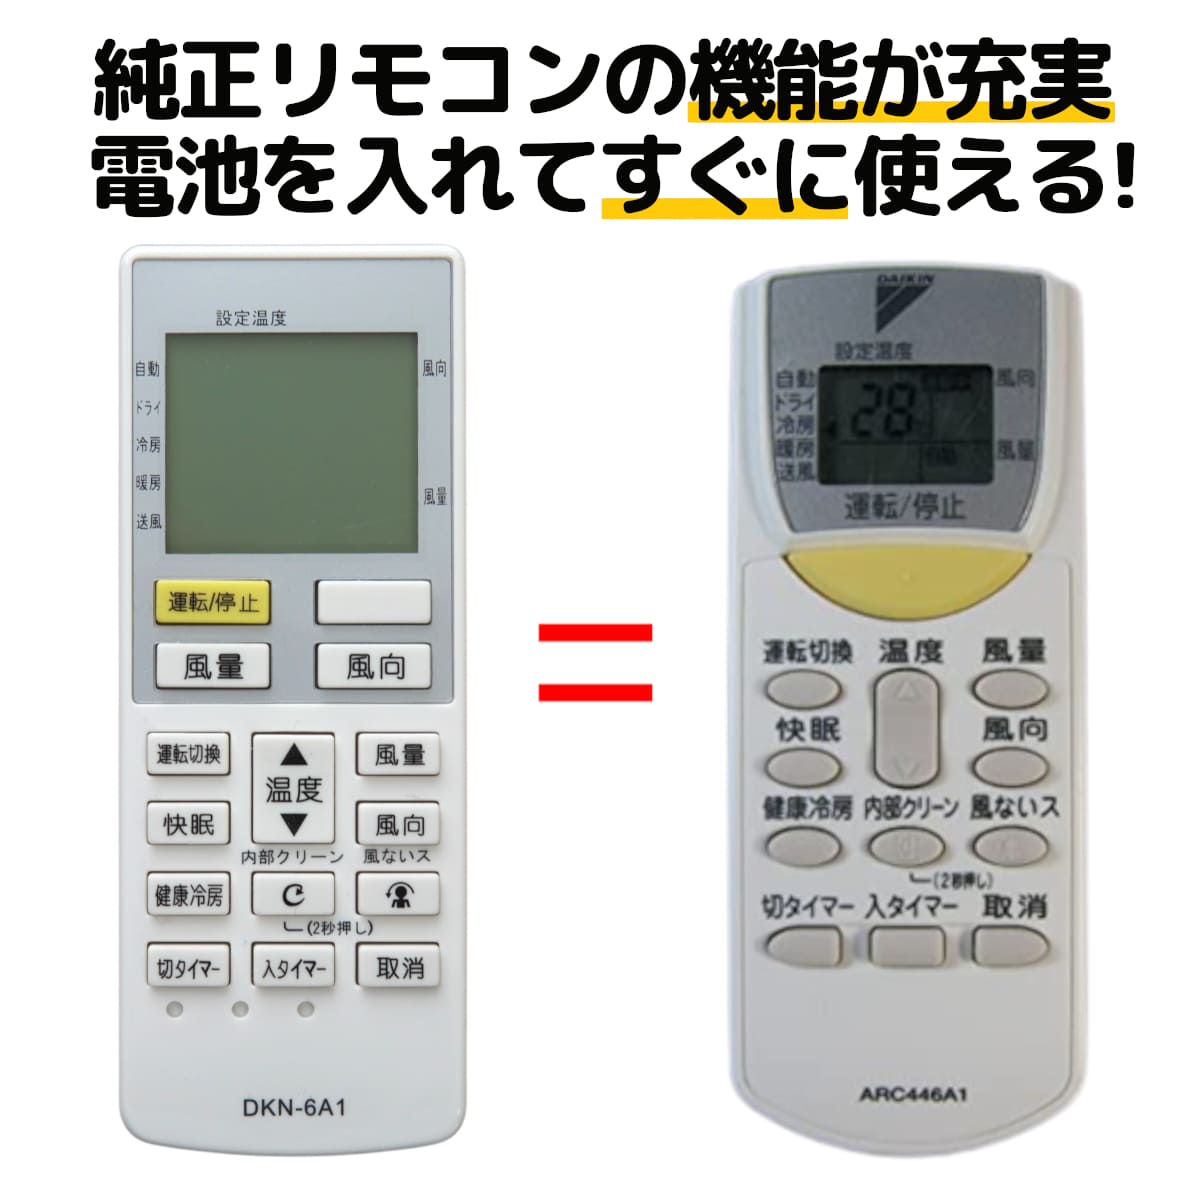 新品 送料無料 ダイキン DAIKIN 別売品 1859267 ARC444A38 ワイヤレスリモコン